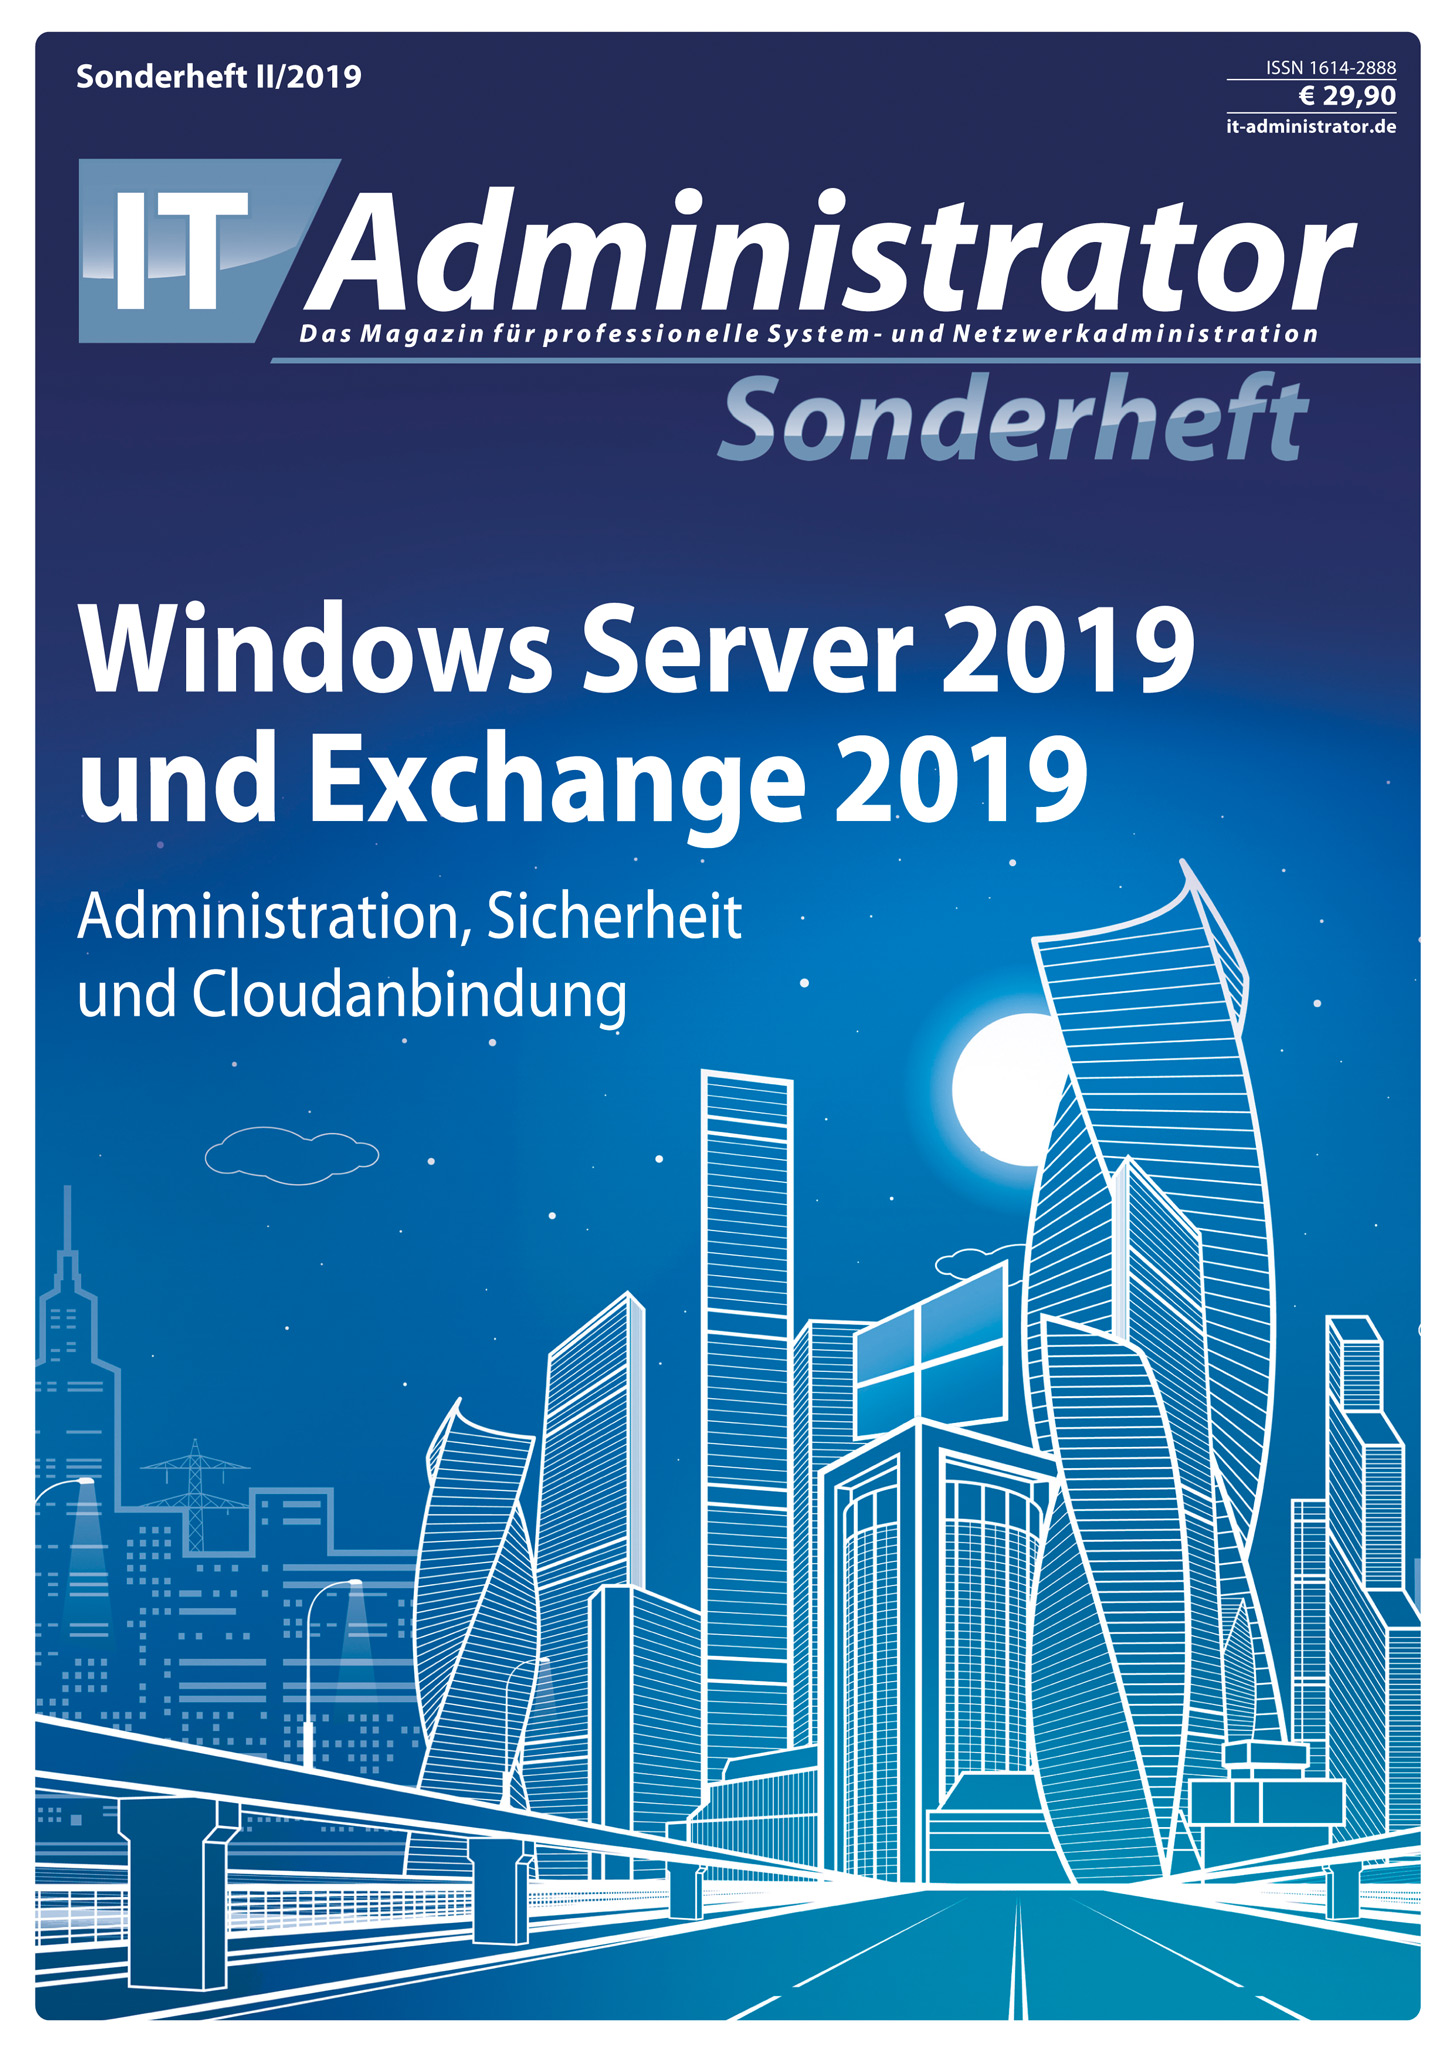 IT-Administrator Sonderheft II/2019 Windows Server 2019 und Exchange 2019